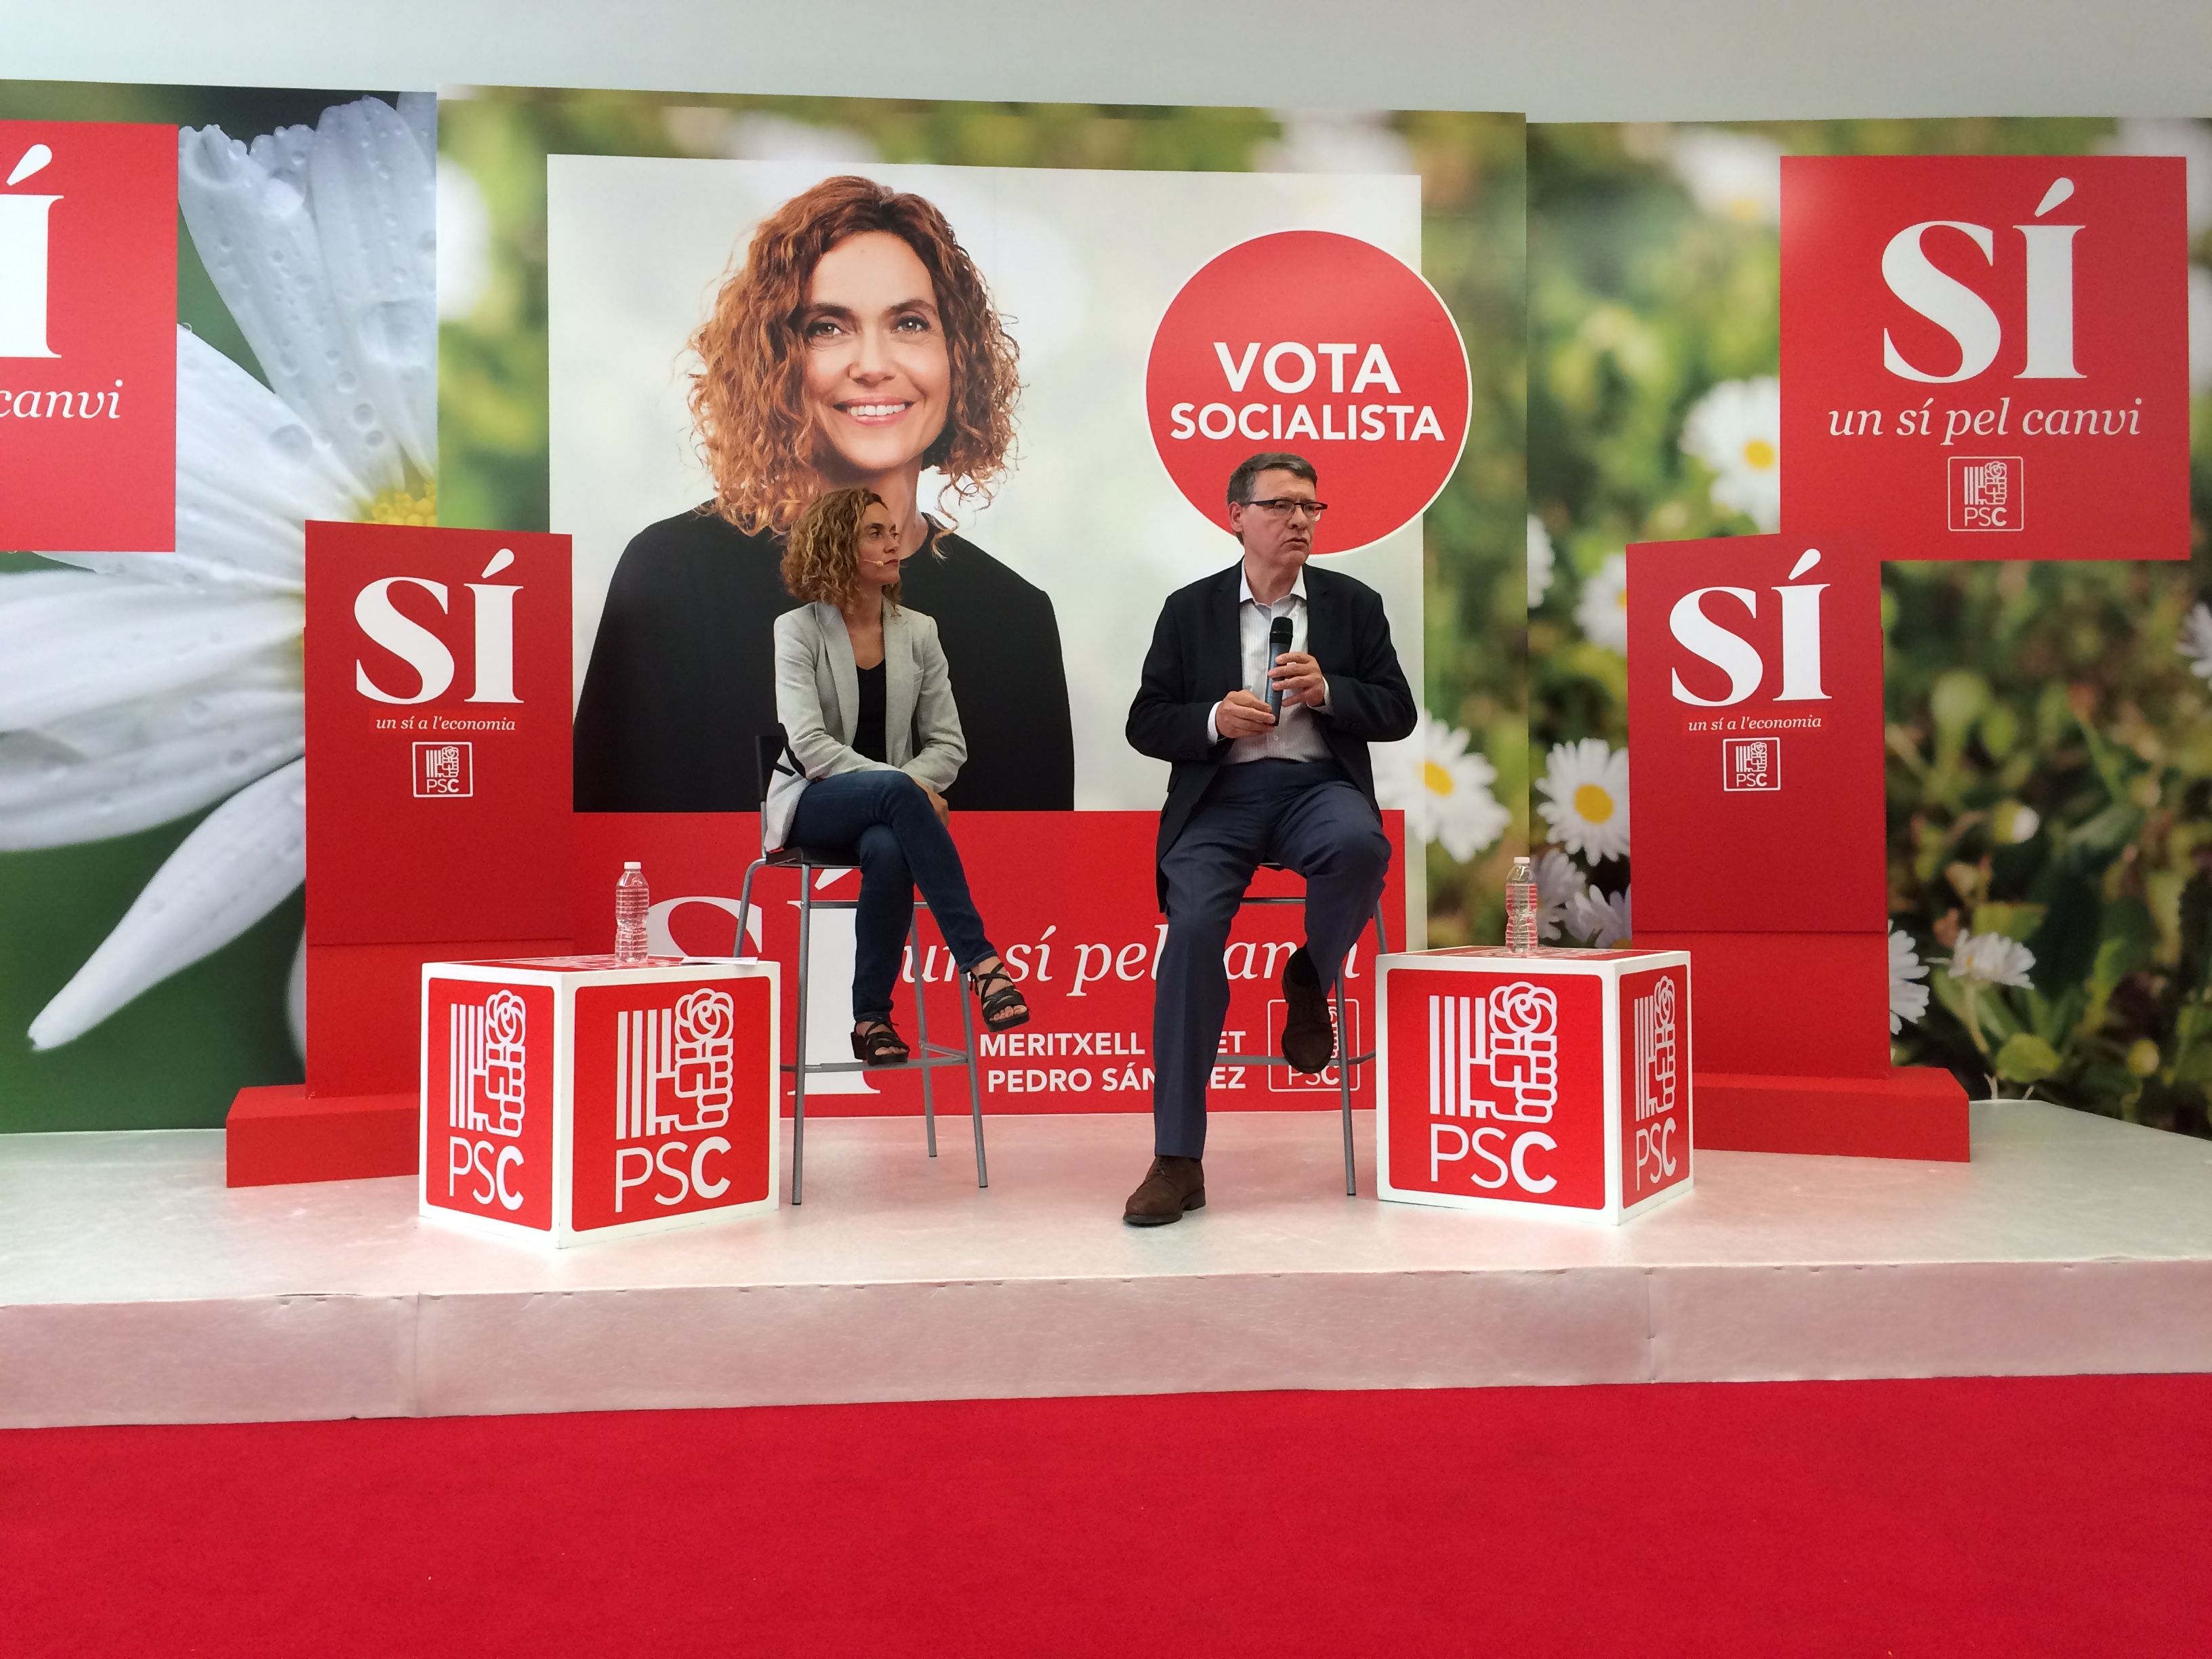 Sevilla acusa Iglesias d'estar en política "només per ser algú"